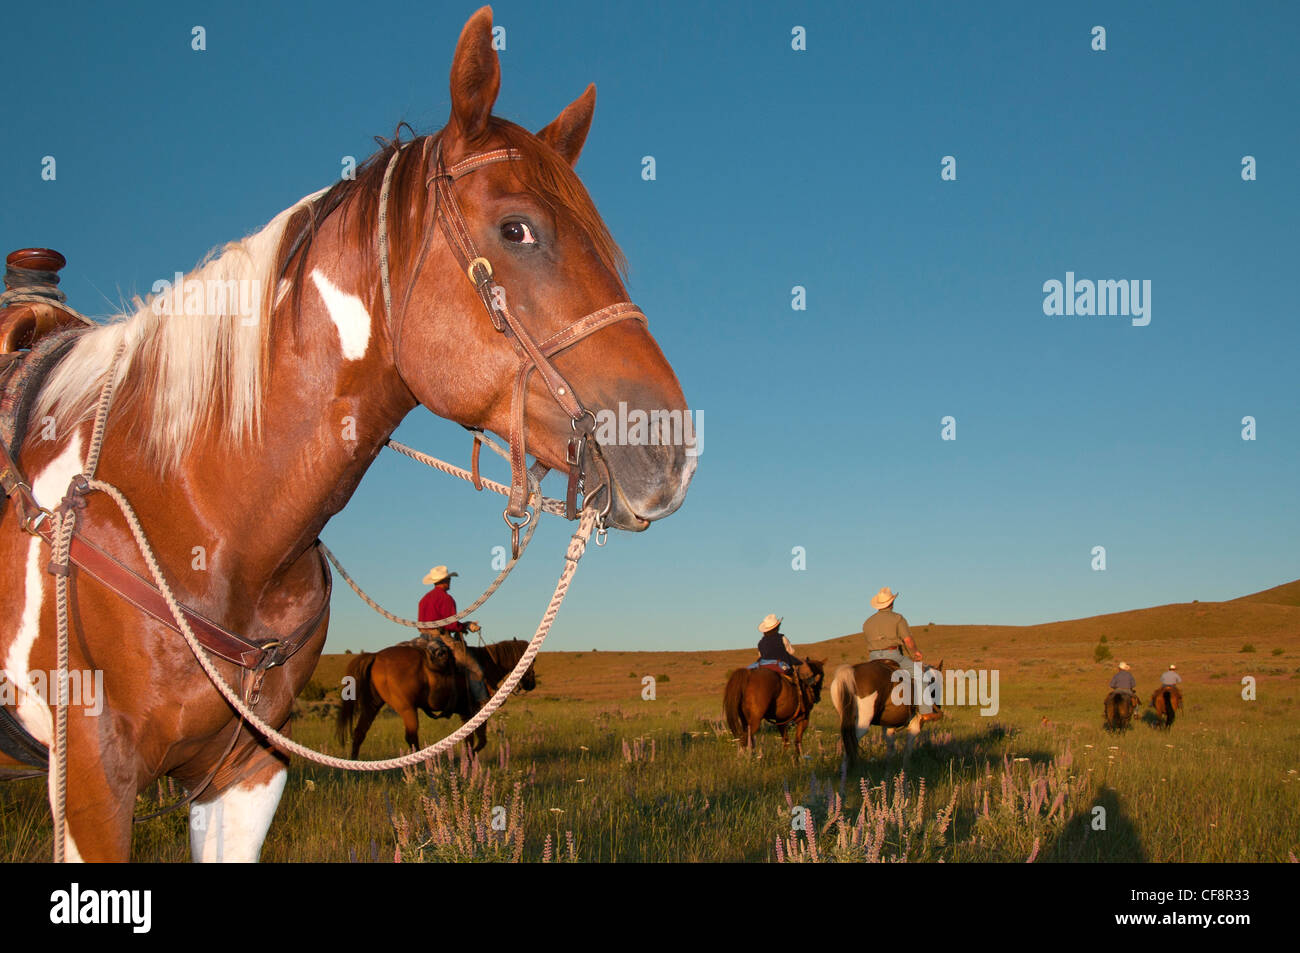 Wilson Ranch, fossili, Oregon, Stati Uniti d'America, Stati Uniti, America, cowboy, cowboy, gamma open, equitazione, cavallo Foto Stock